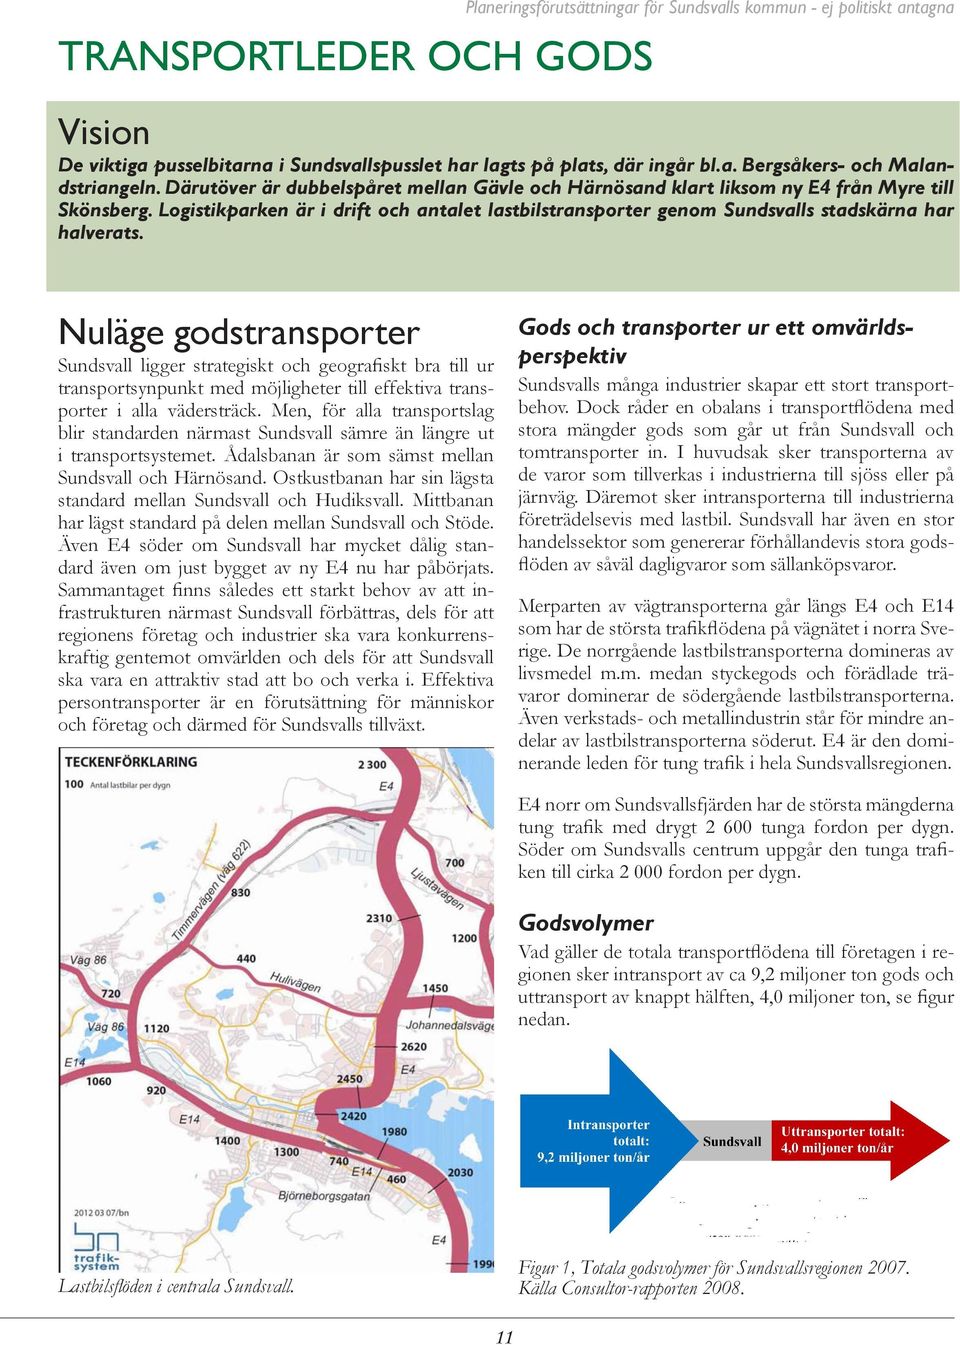 Nuläge godstransporter Sundsvall ligger strategiskt och geografiskt bra till ur transportsynpunkt med möjligheter till effektiva transporter i alla vädersträck.